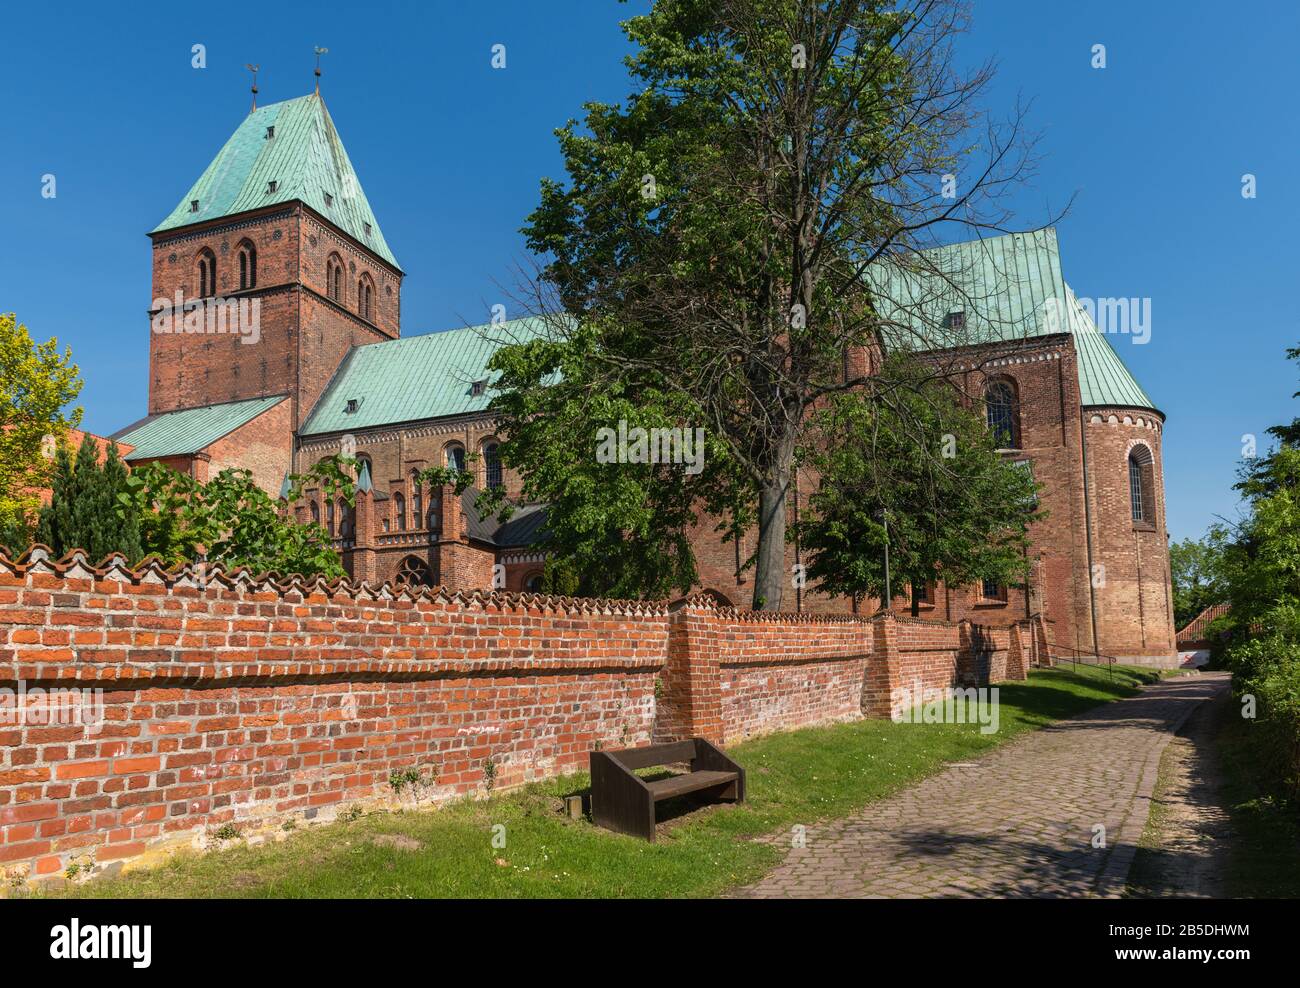 Dom, gegründet von Heinrich dem Löwen, 12. Jahrhundert, Ratzeburg, Alt Dukedom von Lauenburg, Schleswig-Holstein, Norddeutschland, Mitteleuropa Stockfoto